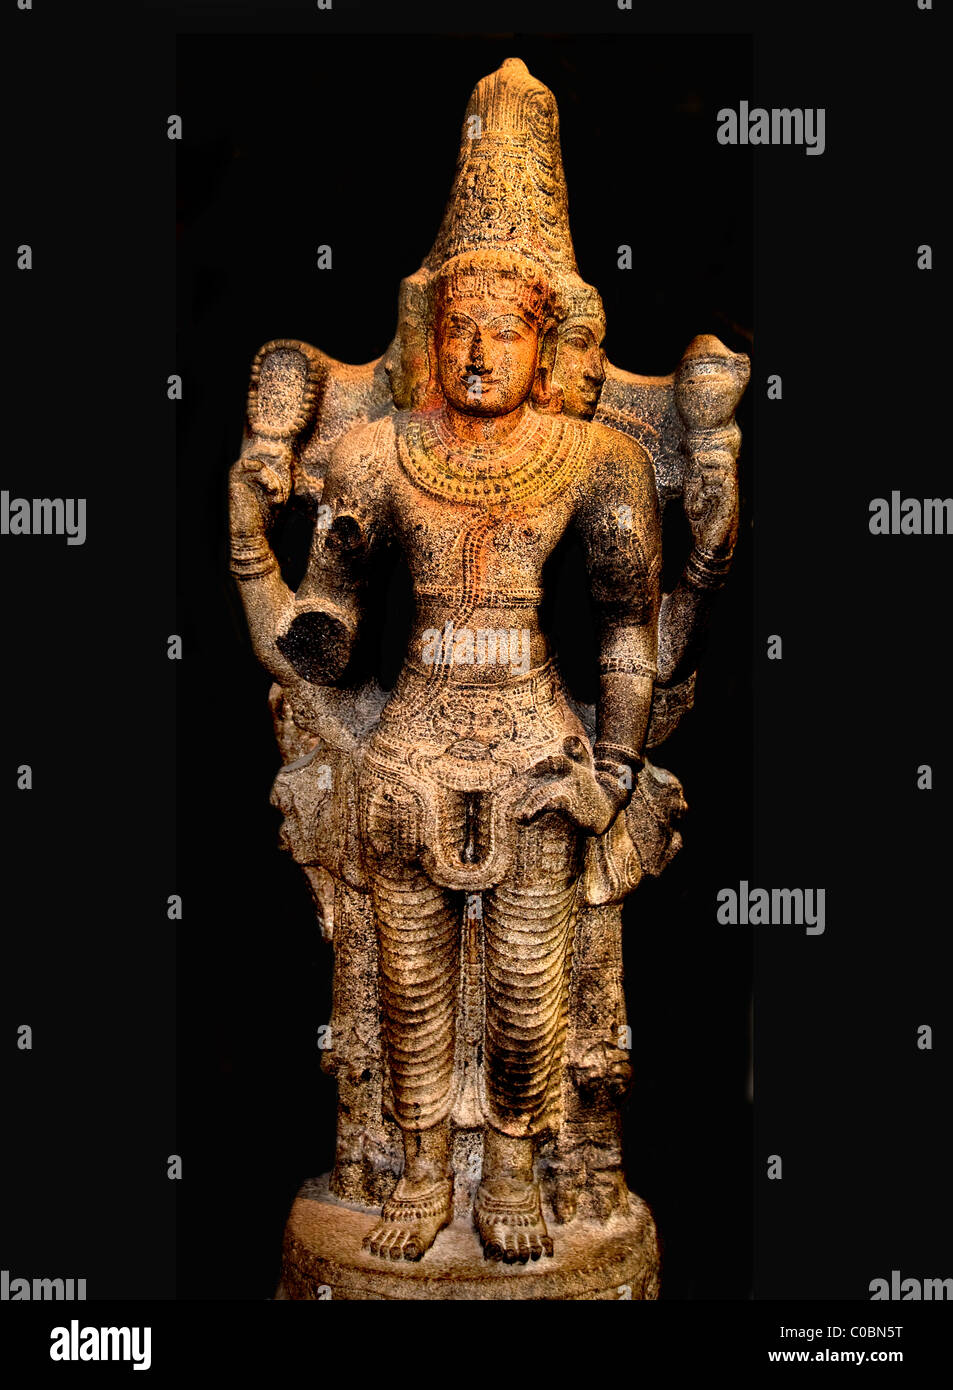 Brahma de l'Inde Tamil Nadu dynastie Chola 1150 AD 1110 création de Brahman Banque D'Images